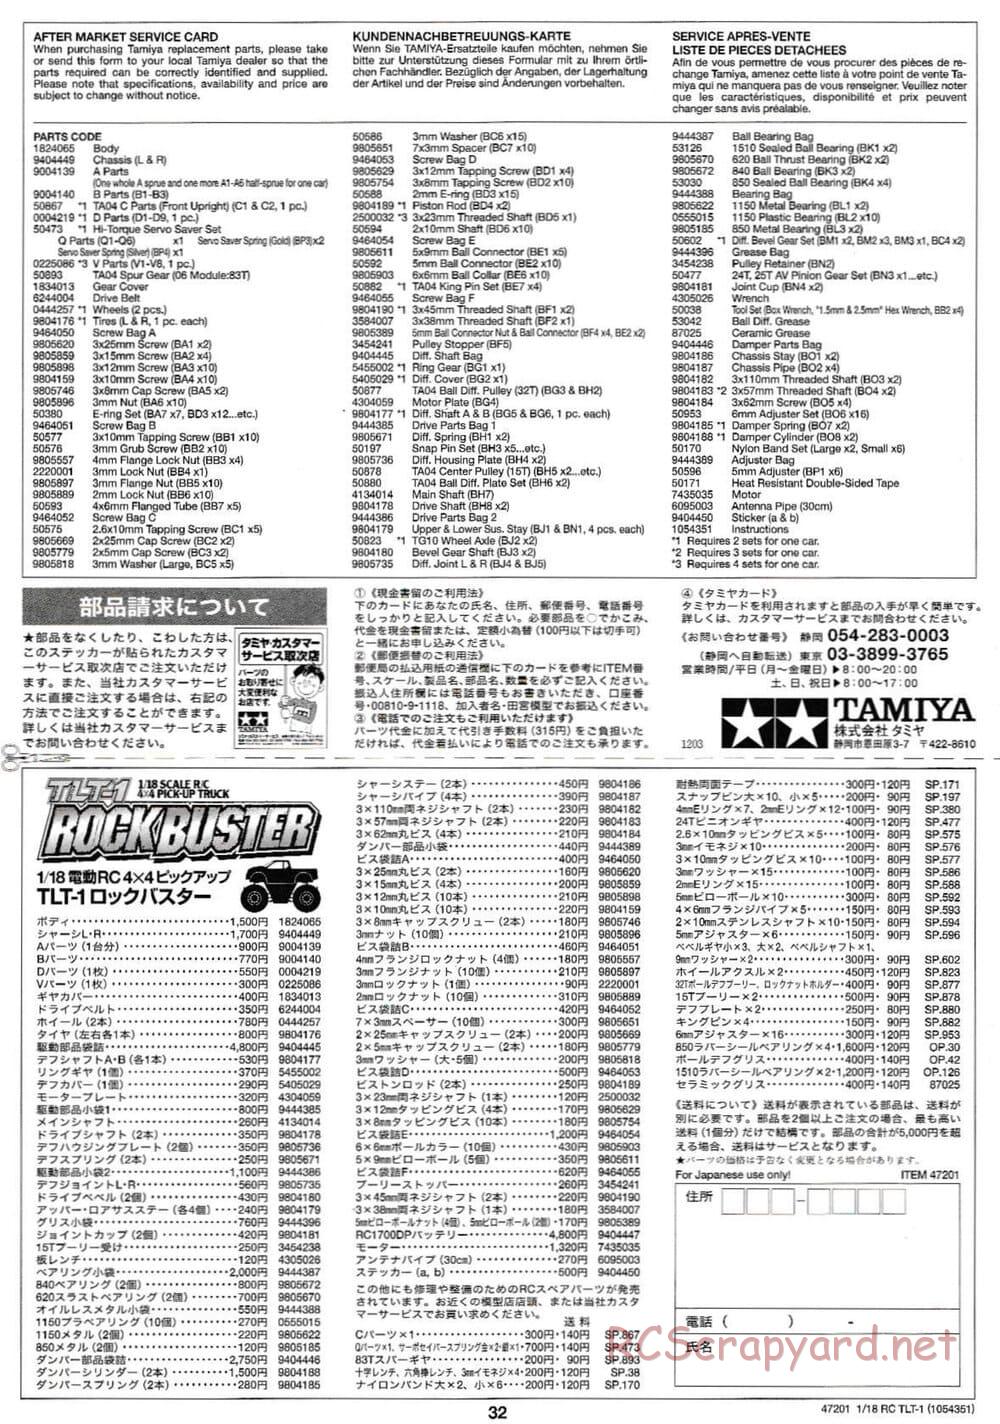 Tamiya - Rock Buster - TLT-1 Chassis - Manual - Page 32